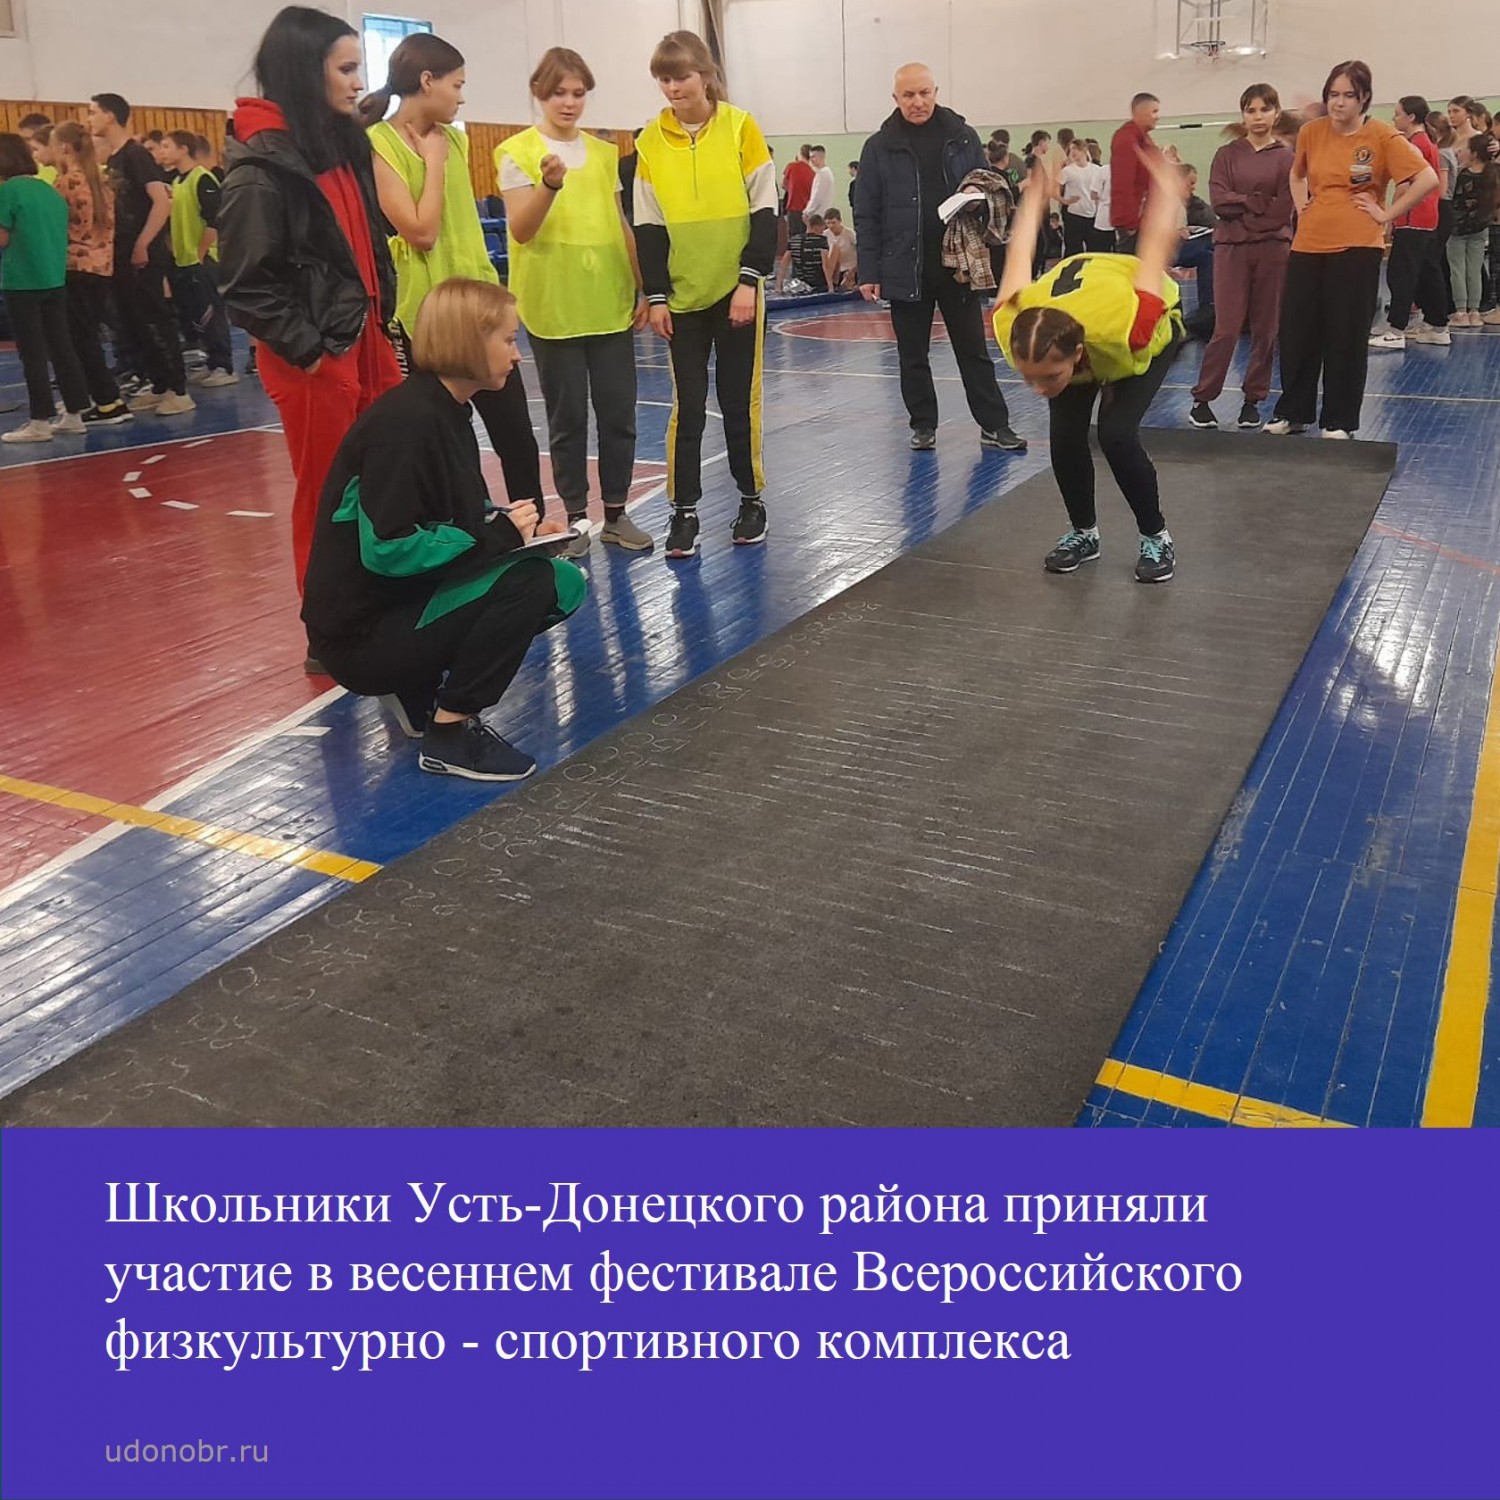 Школьники Усть-Донецкого района приняли участие в весеннем фестивале Всероссийского физкультурно - спортивного комплекса